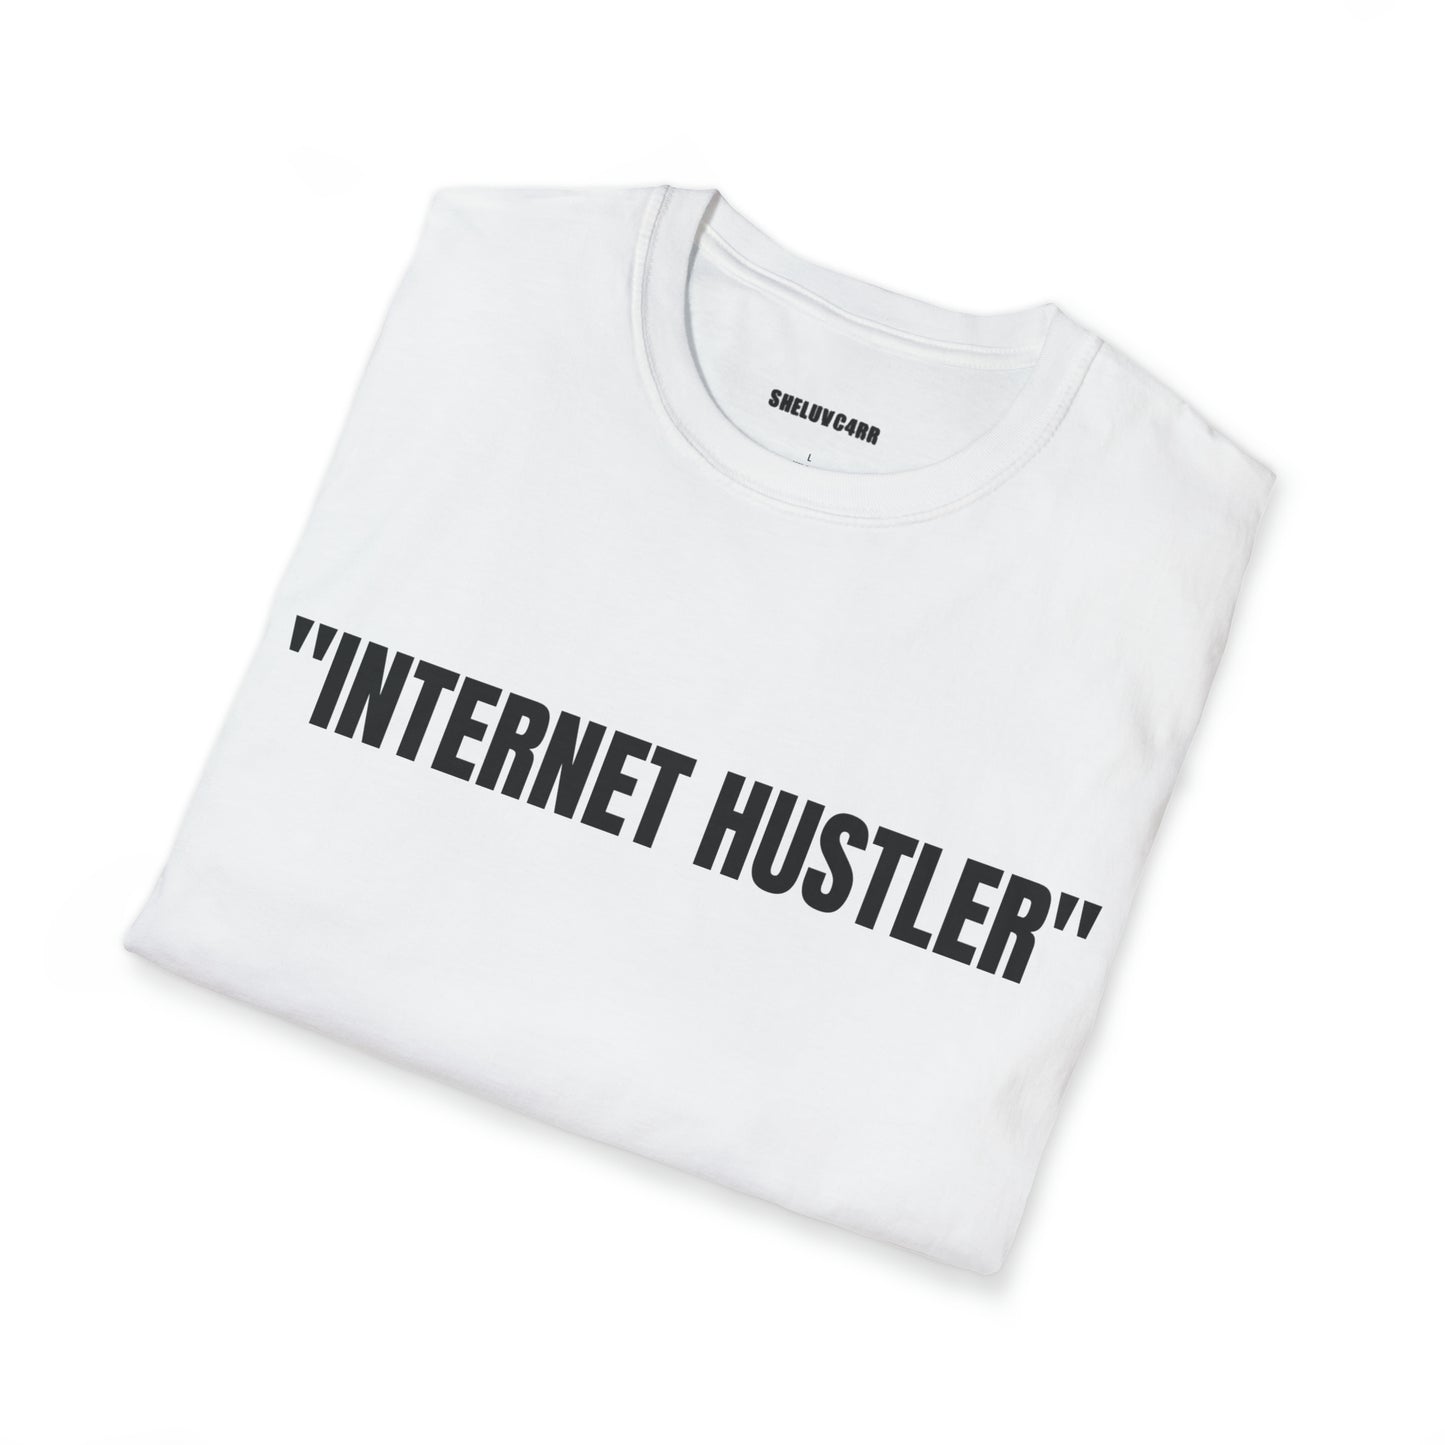 “Internet Hustler” T-Shirt